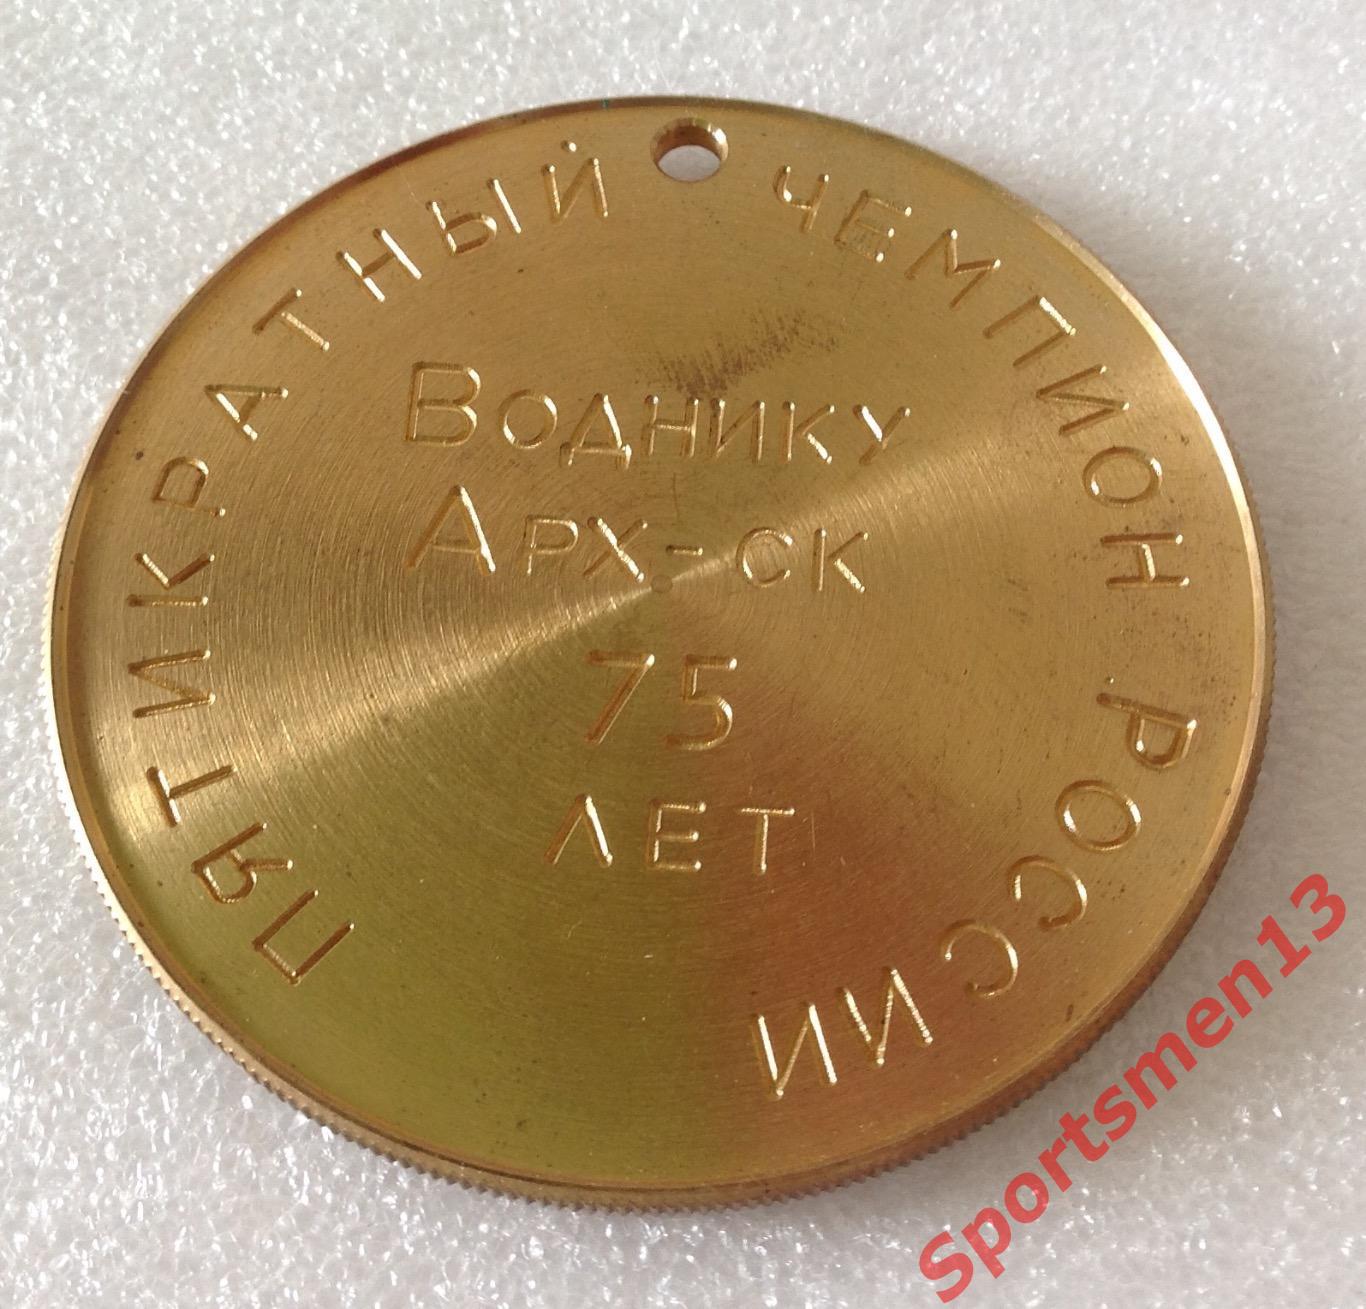 Хоккей с мячом. Медаль памятная. Водник Архангельск, 2000 1